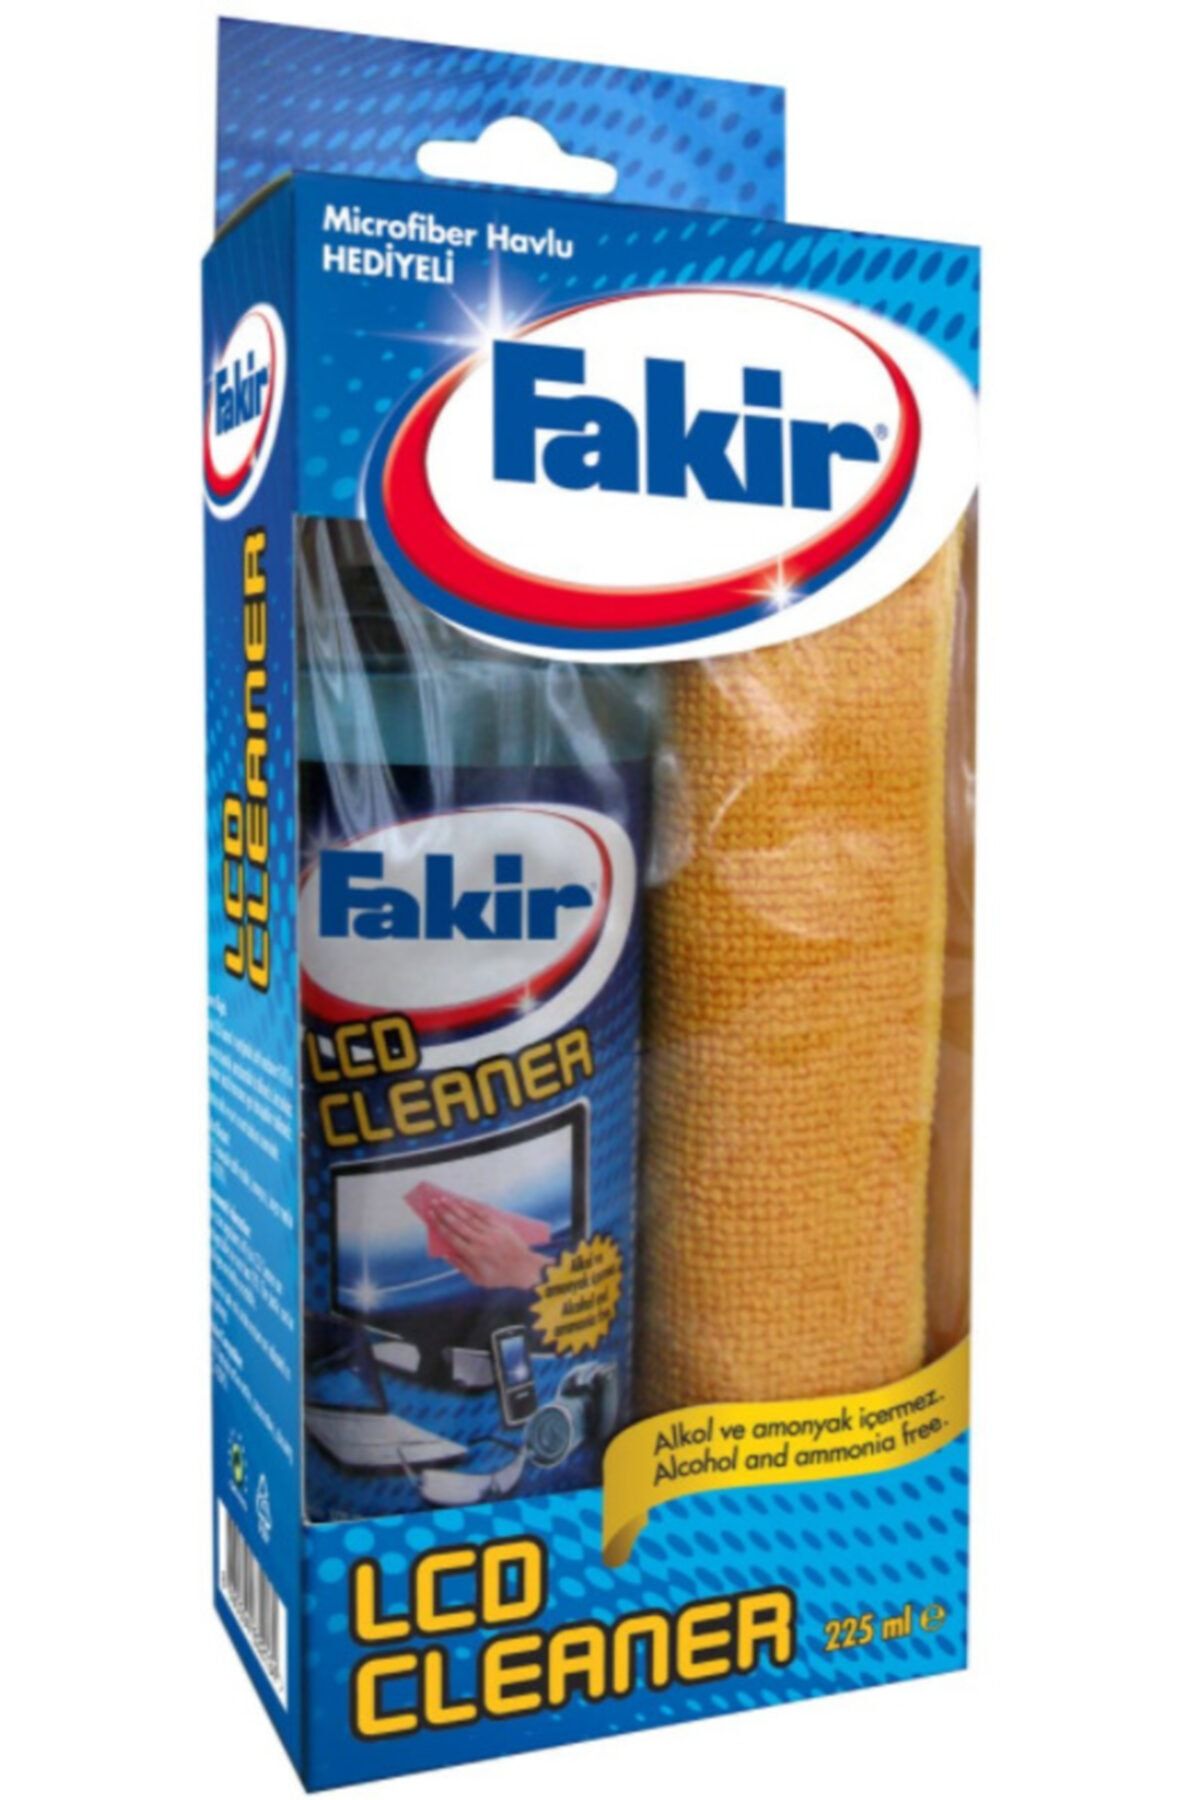 Fakir Lcd Cleaner 225ml